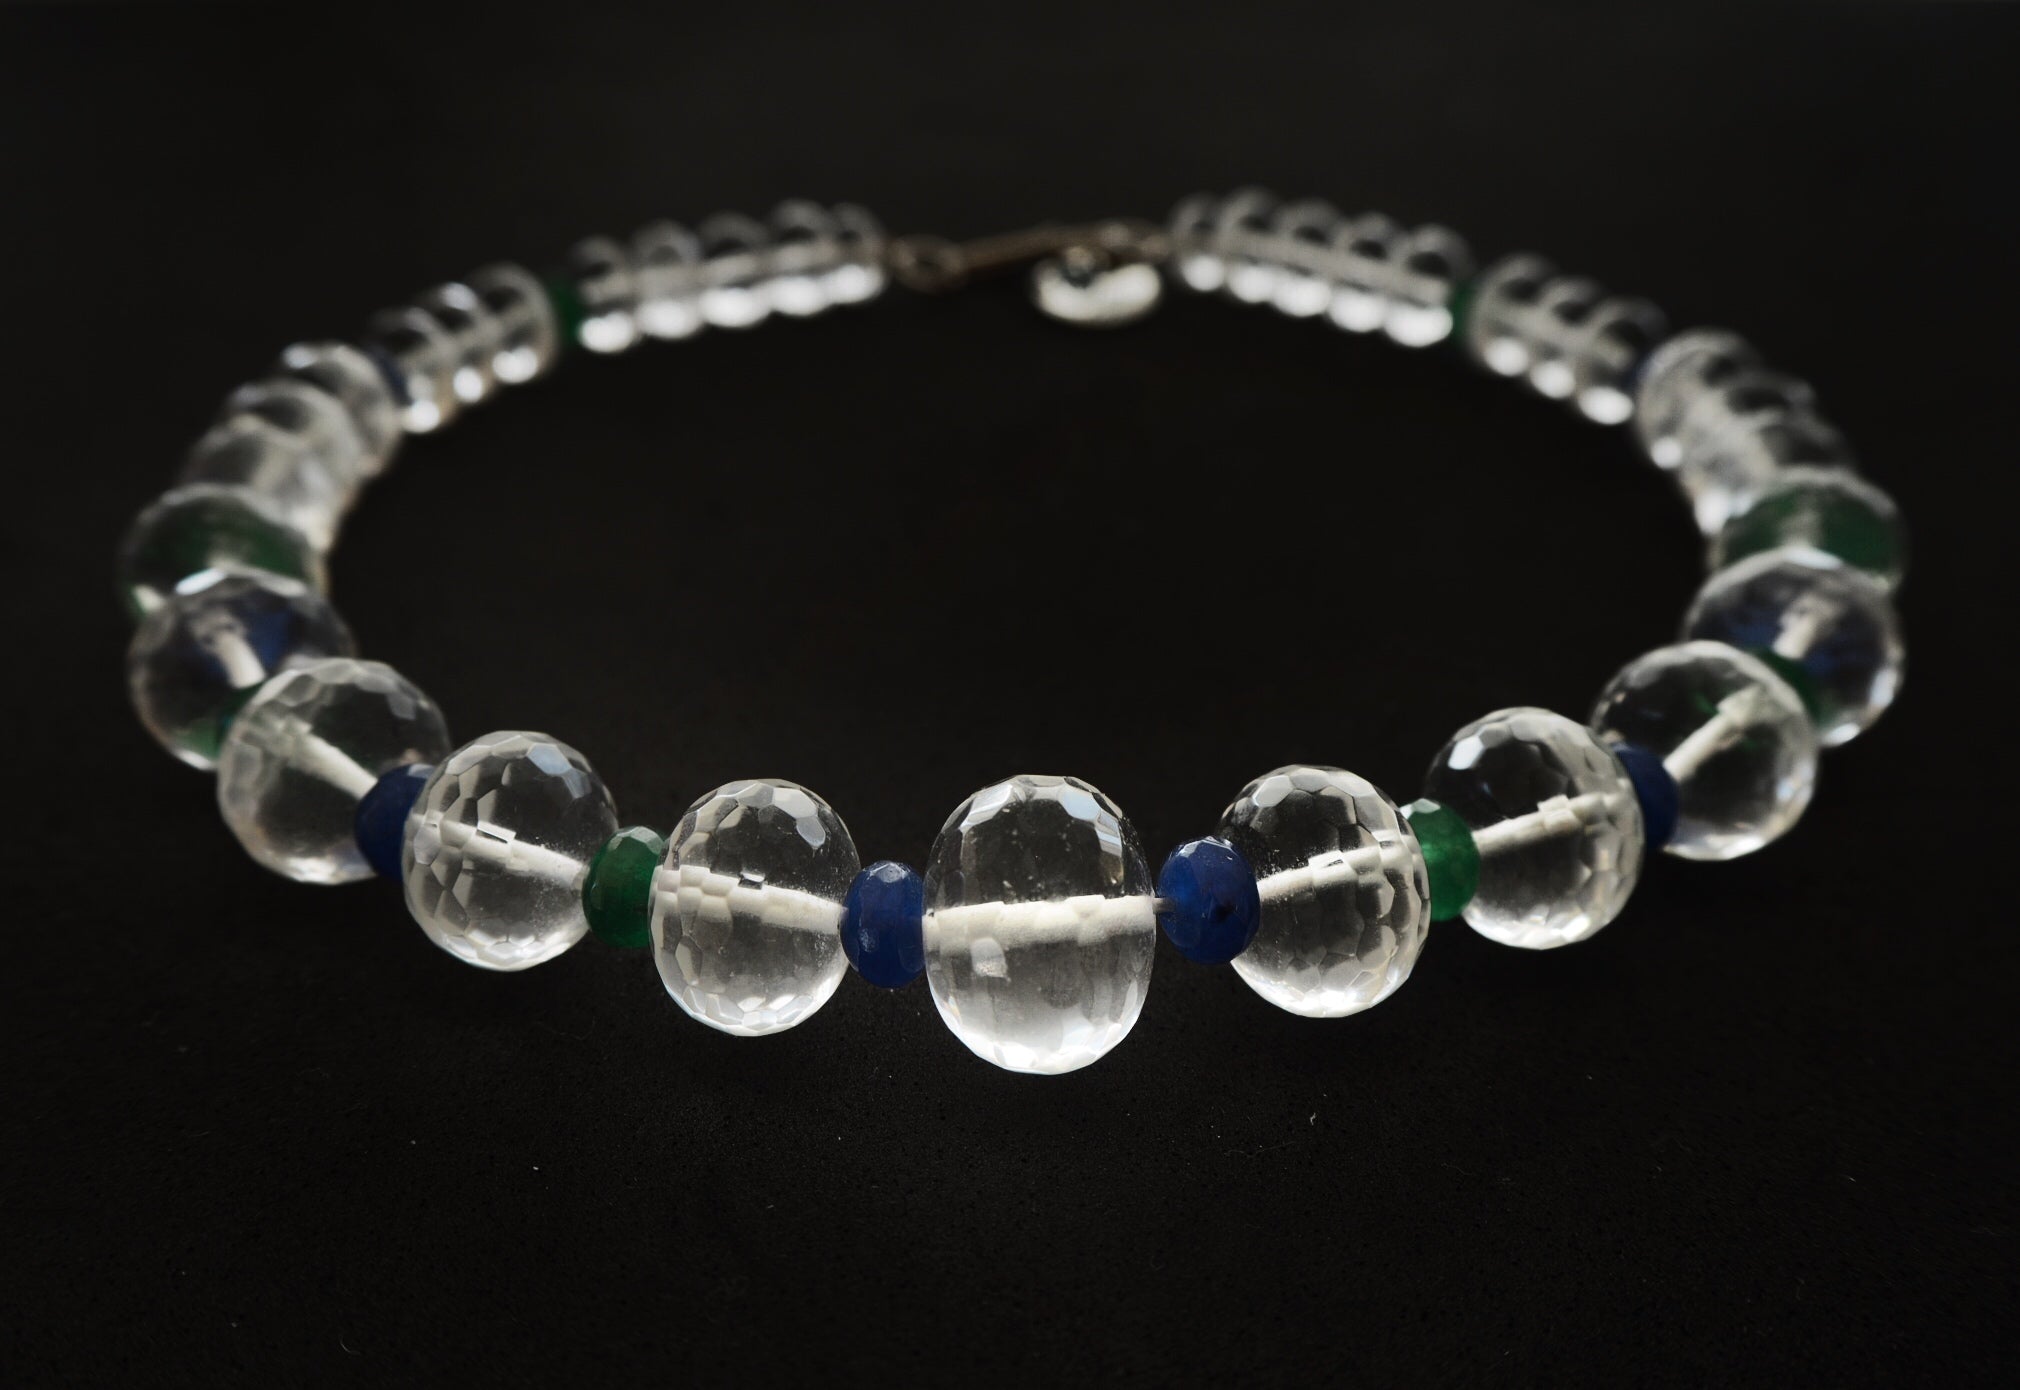 Colar de quartzo de cristal de rocha e jade azul e verde, pedras preciosas naturais, colar único